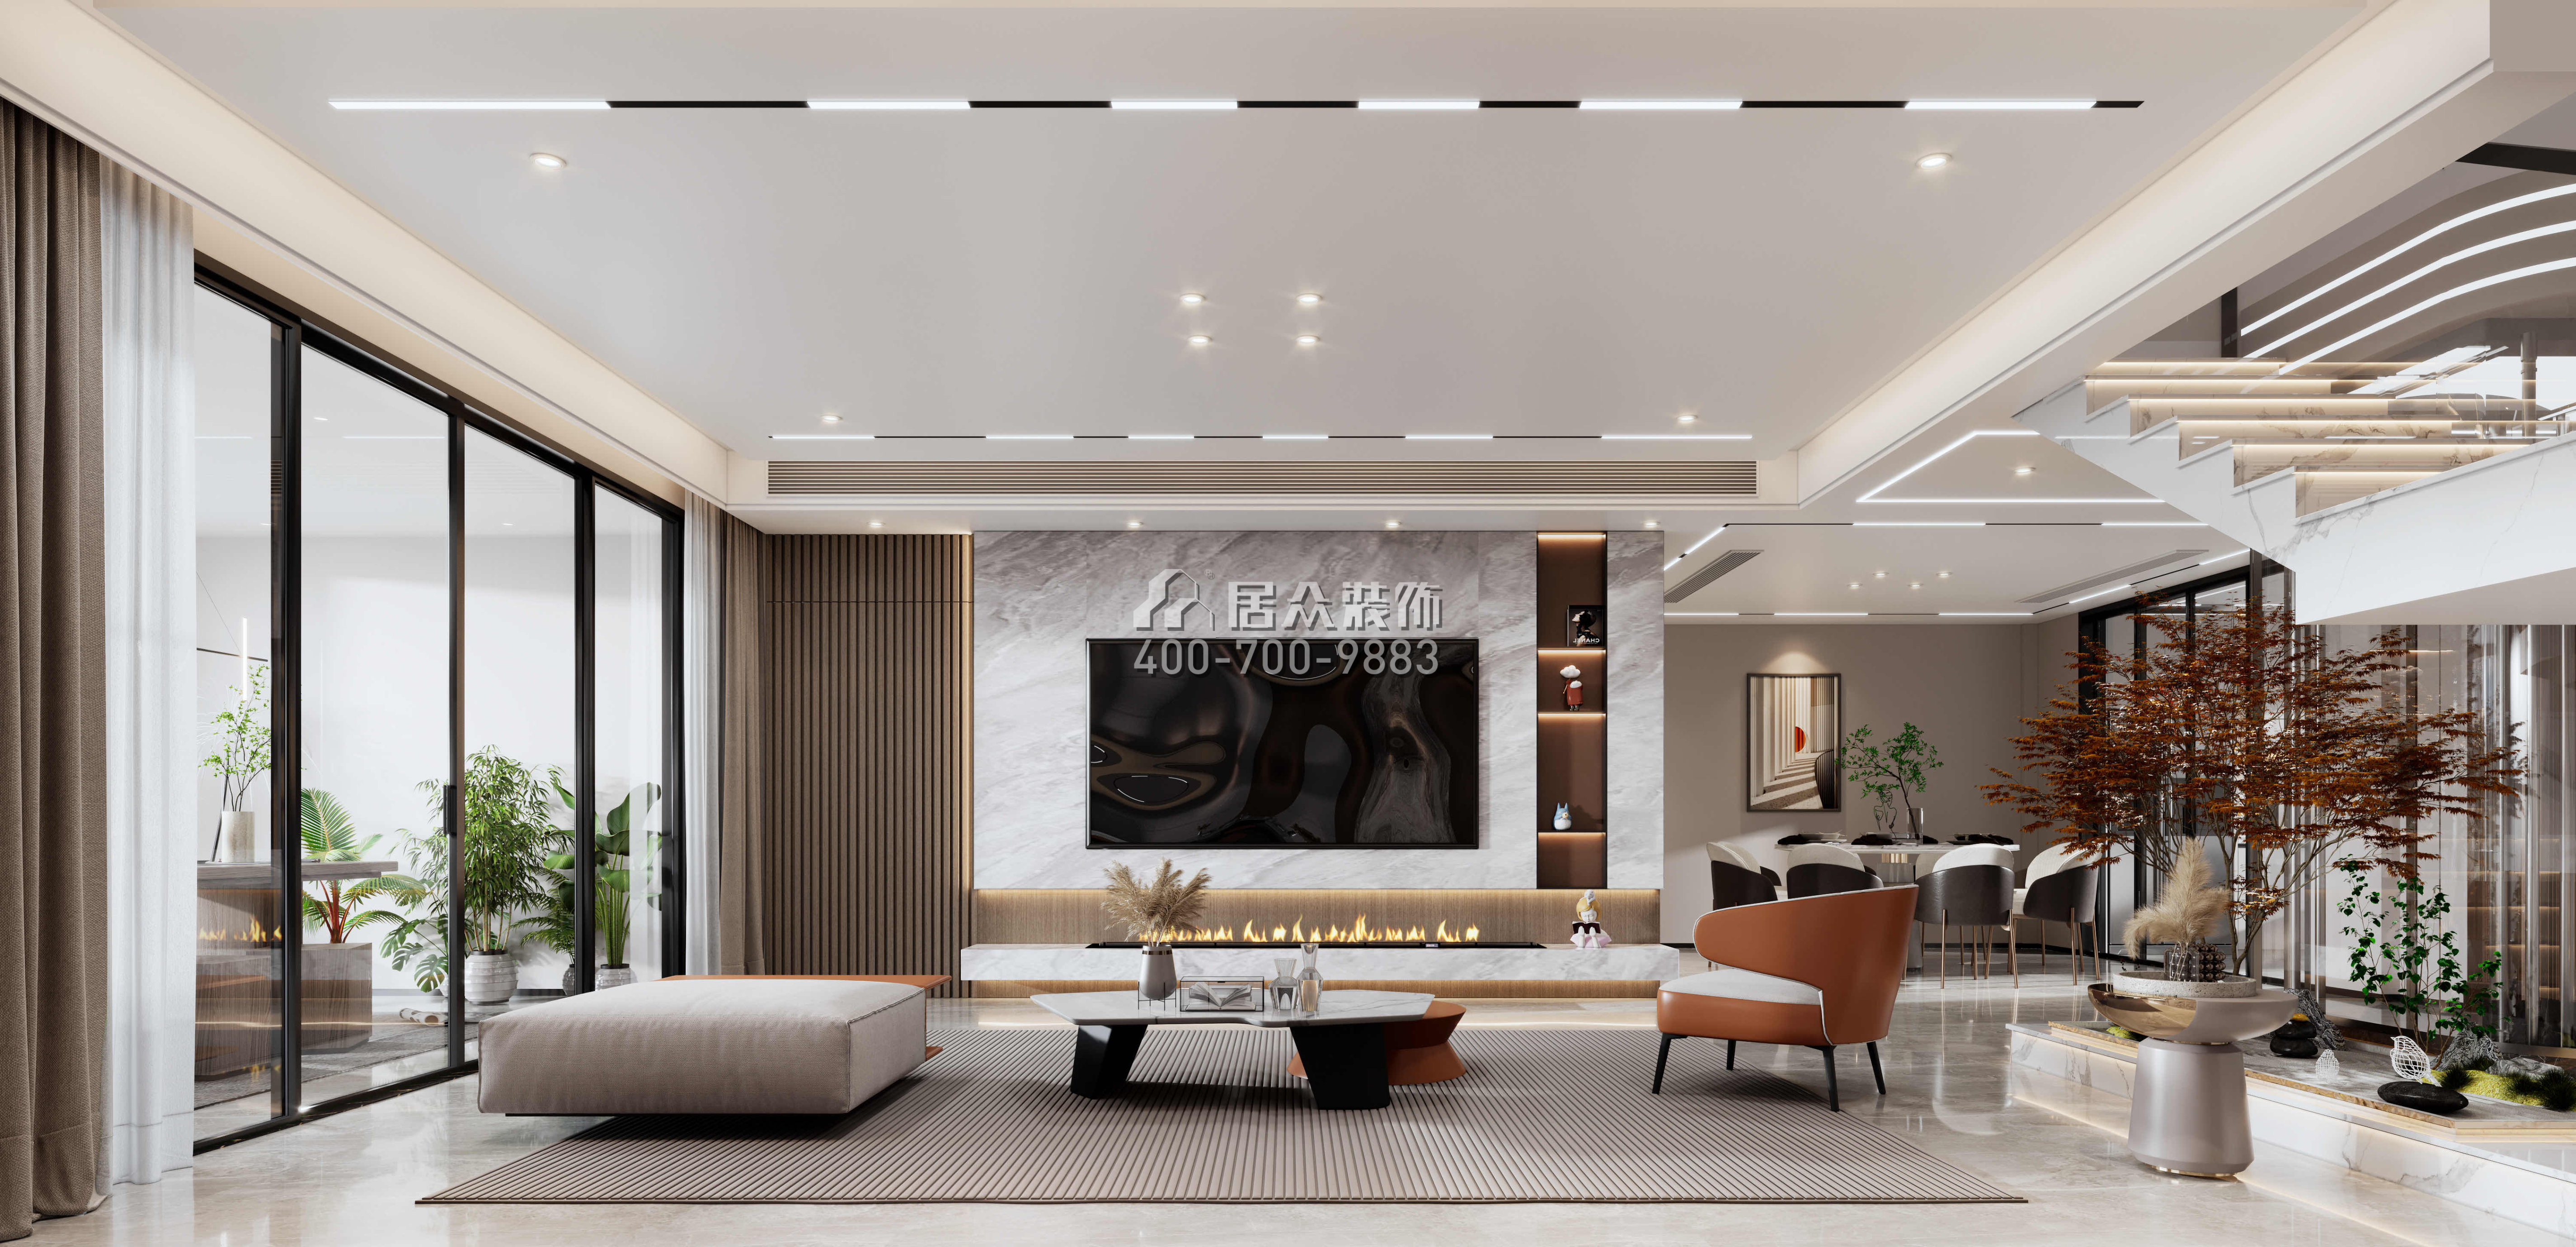 金天地悅灣450平方米現代簡約風格疊墅戶型客廳裝修效果圖